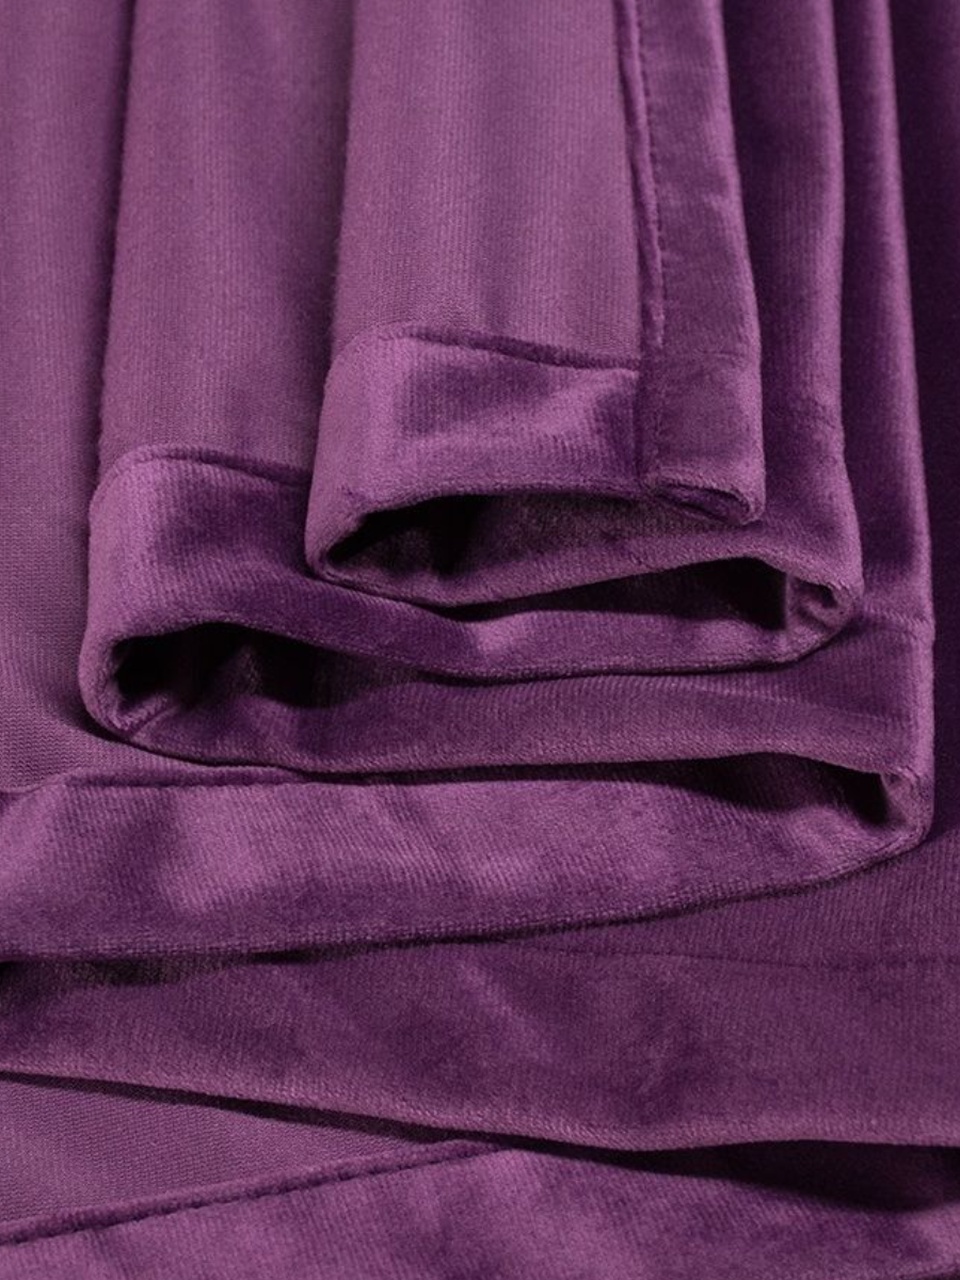 Портьеры Бархат фиолетовый - 590 ₽, заказать онлайн.